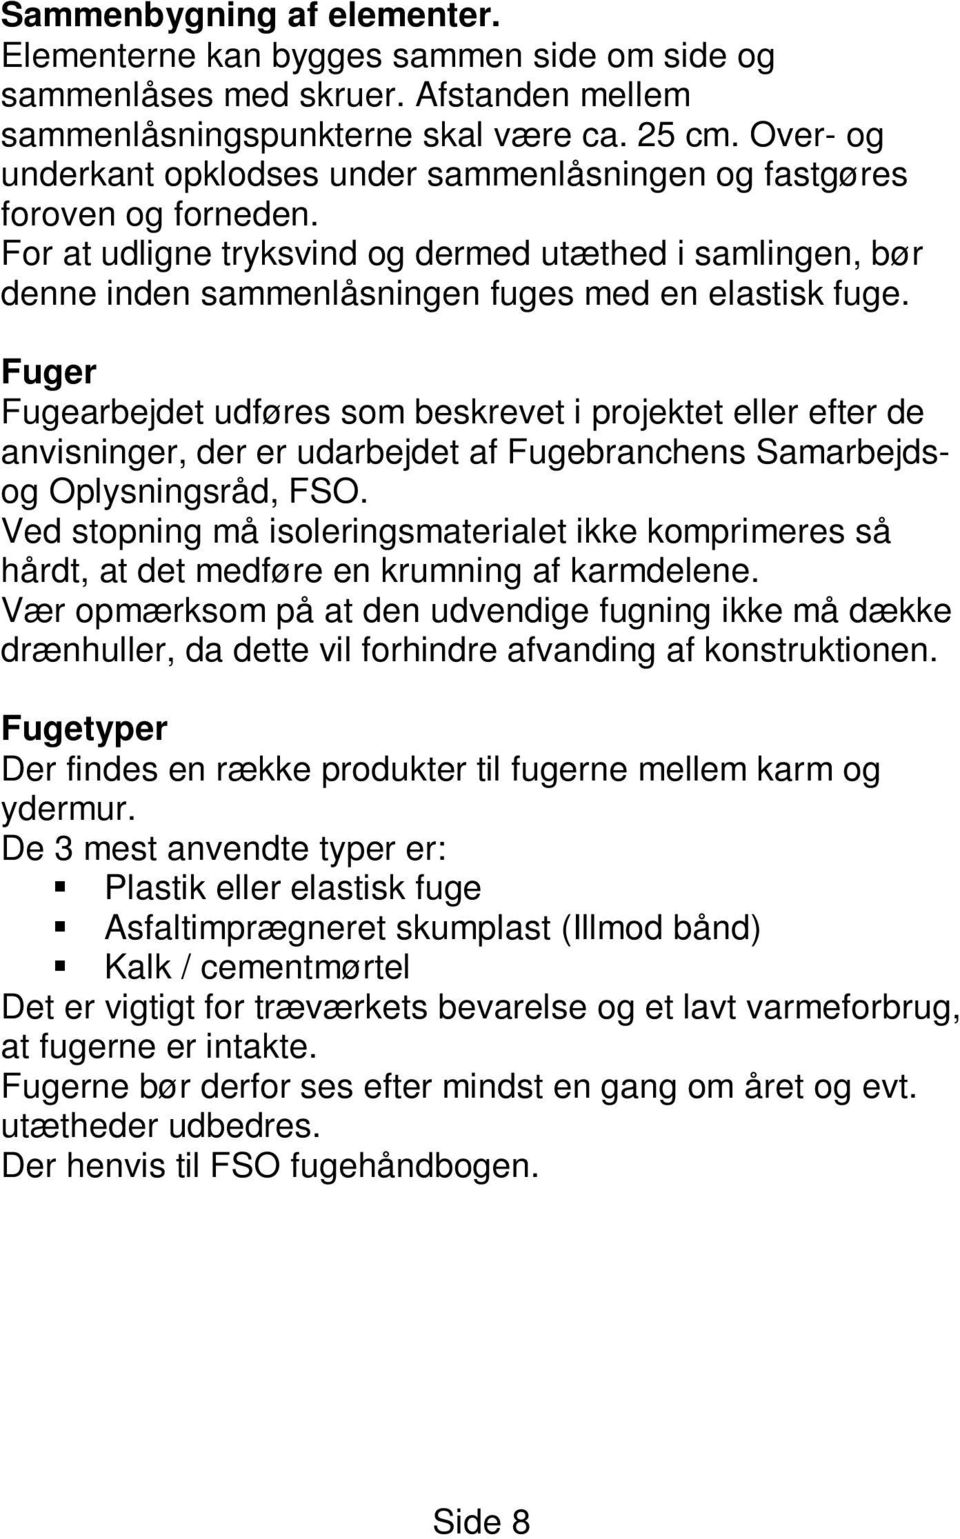 Fuger Fugearbejdet udføres som beskrevet i projektet eller efter de anvisninger, der er udarbejdet af Fugebranchens Samarbejdsog Oplysningsråd, FSO.